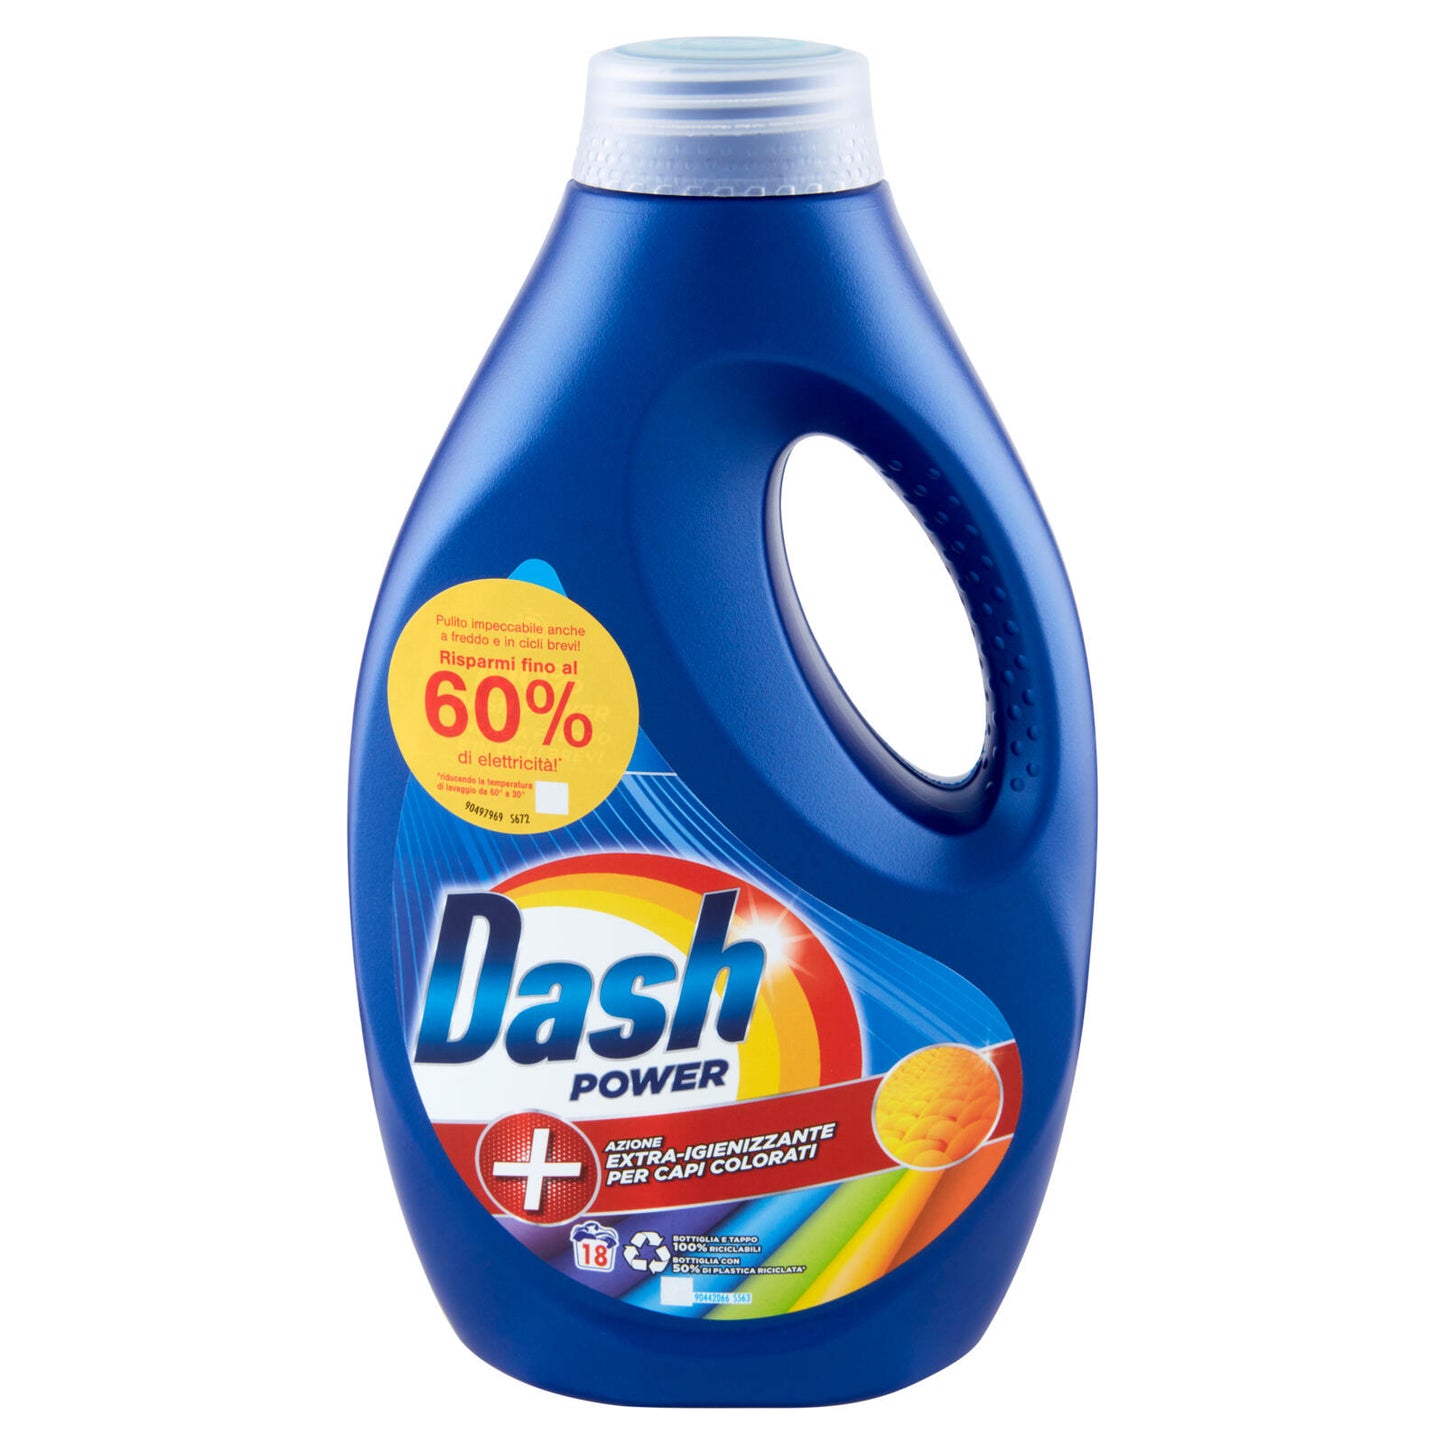 Dash Power Detersivo Liquido Lavatrice, Azione Extra-Igienizzante Capi Colorati, 18 Lavaggi 900 ml